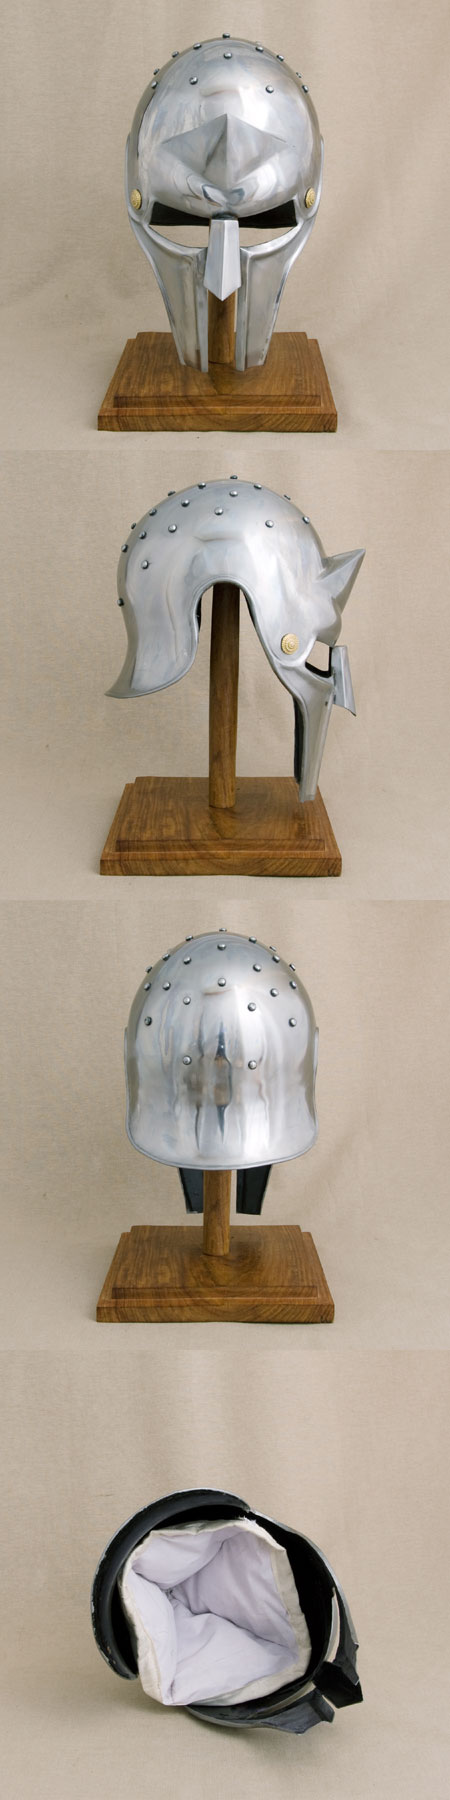 Roman film helmet, Gladiator Maximus